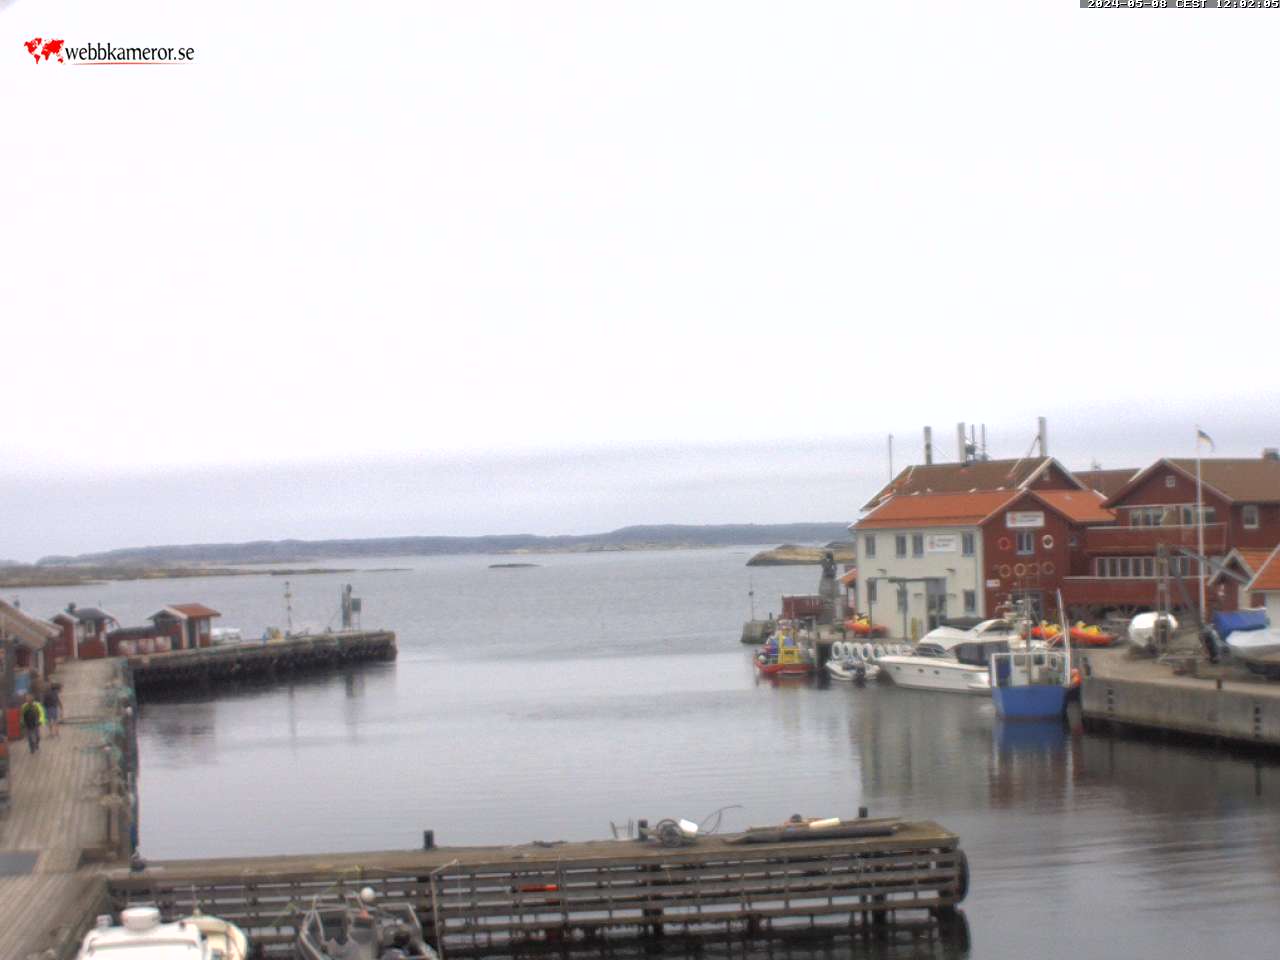 Webcam Käringön, Orust, Bohuslän, Schweden